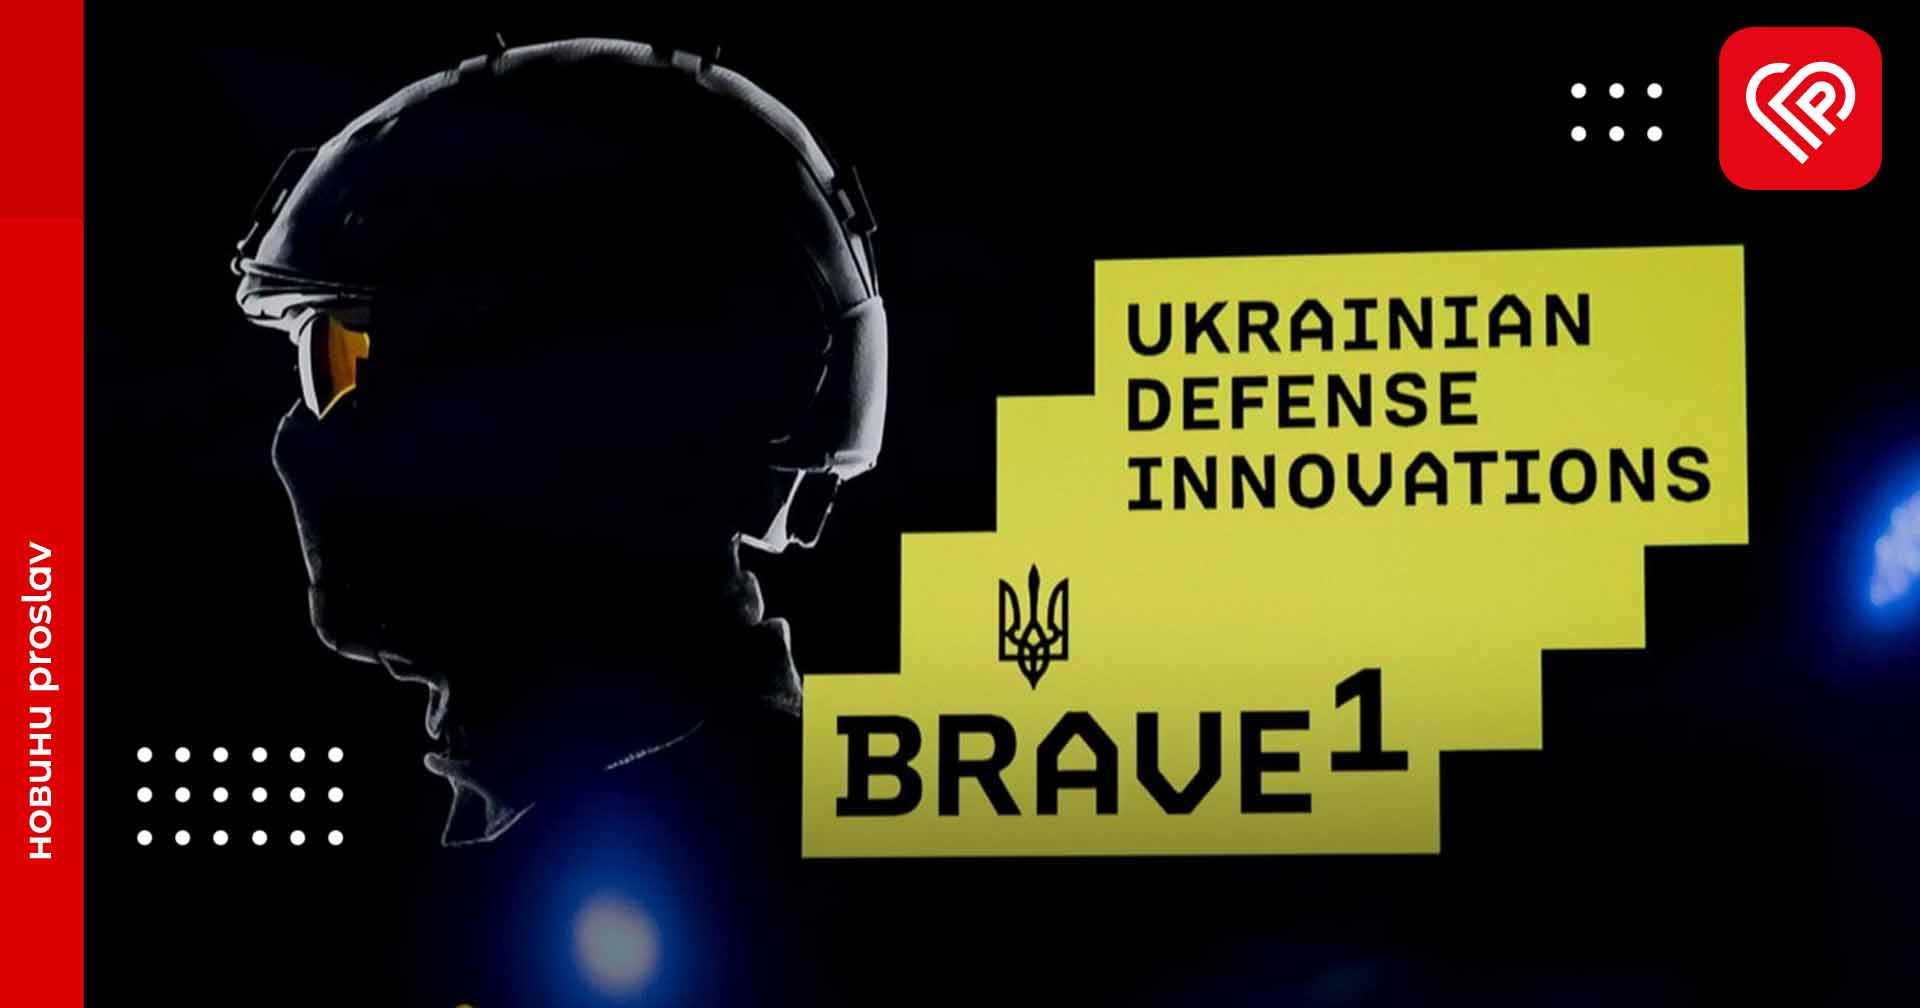 Українські розробники отримали від Brave1 понад 1 млн доларів грантових коштів на оборонні технології